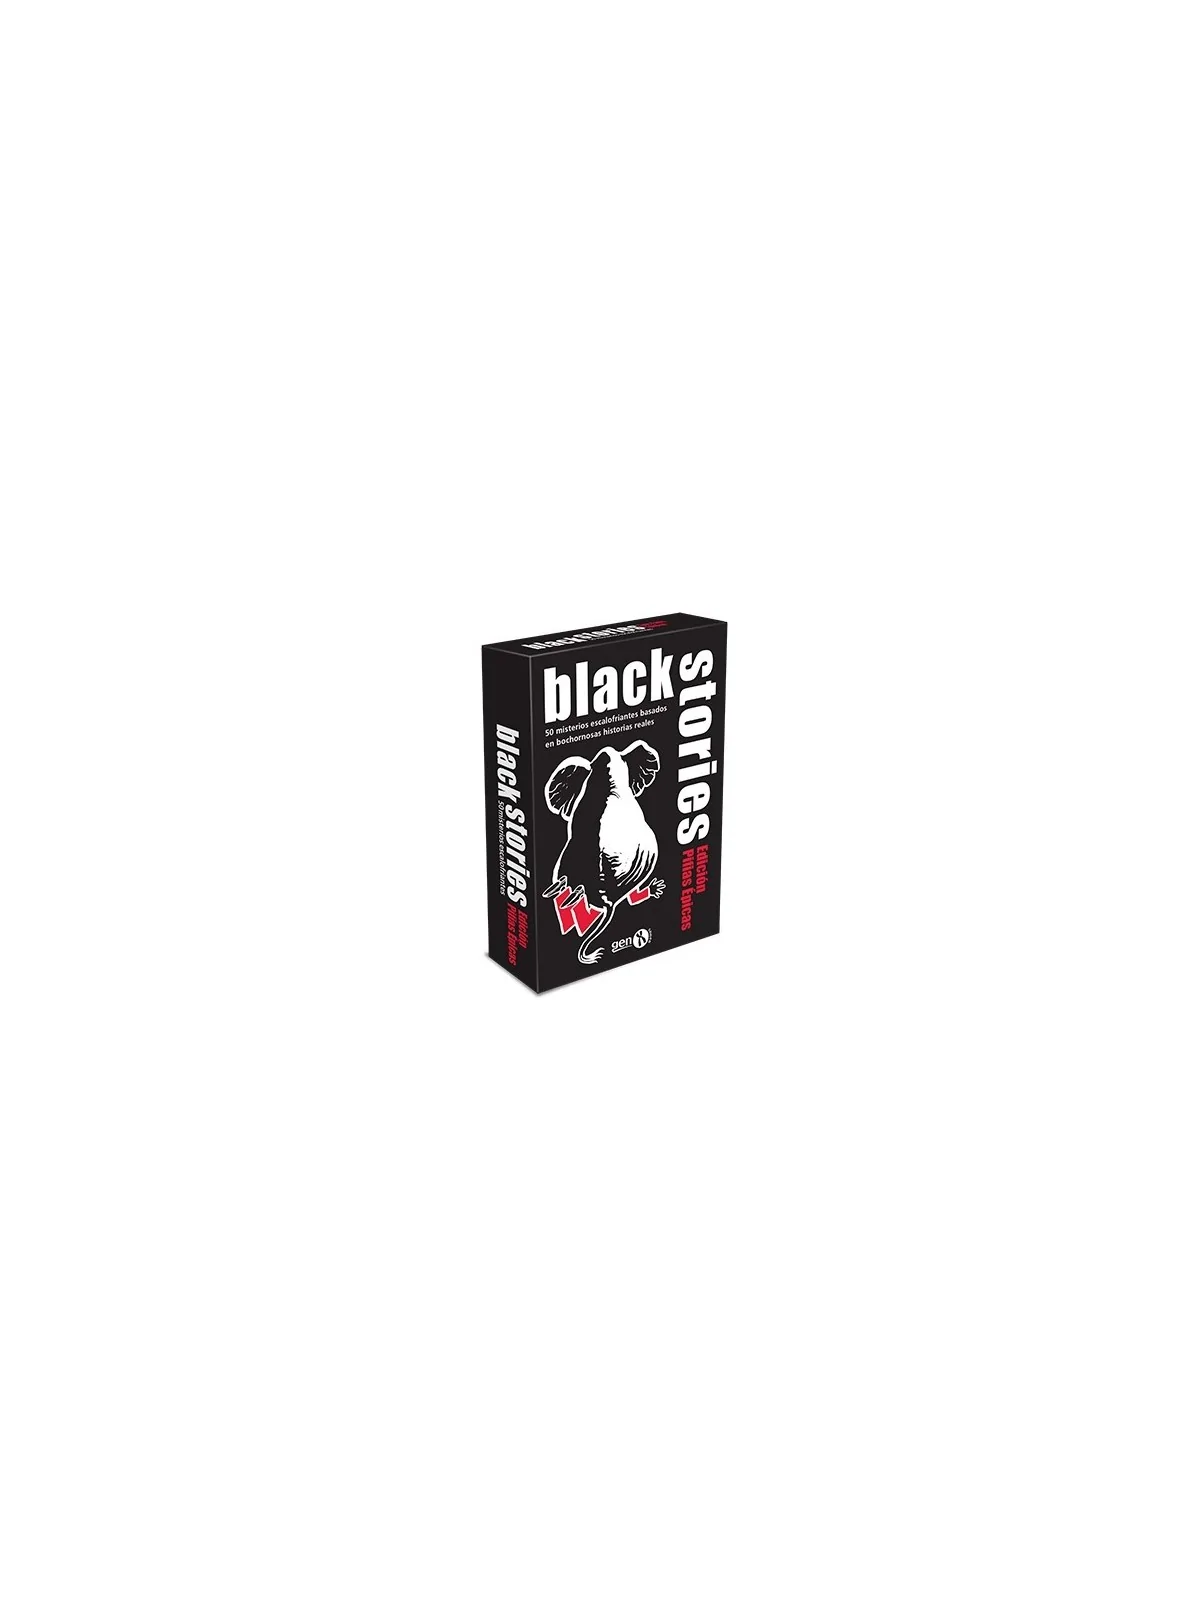 Comprar Black Stories Pifias Épicas barato al mejor precio 11,65 € de 